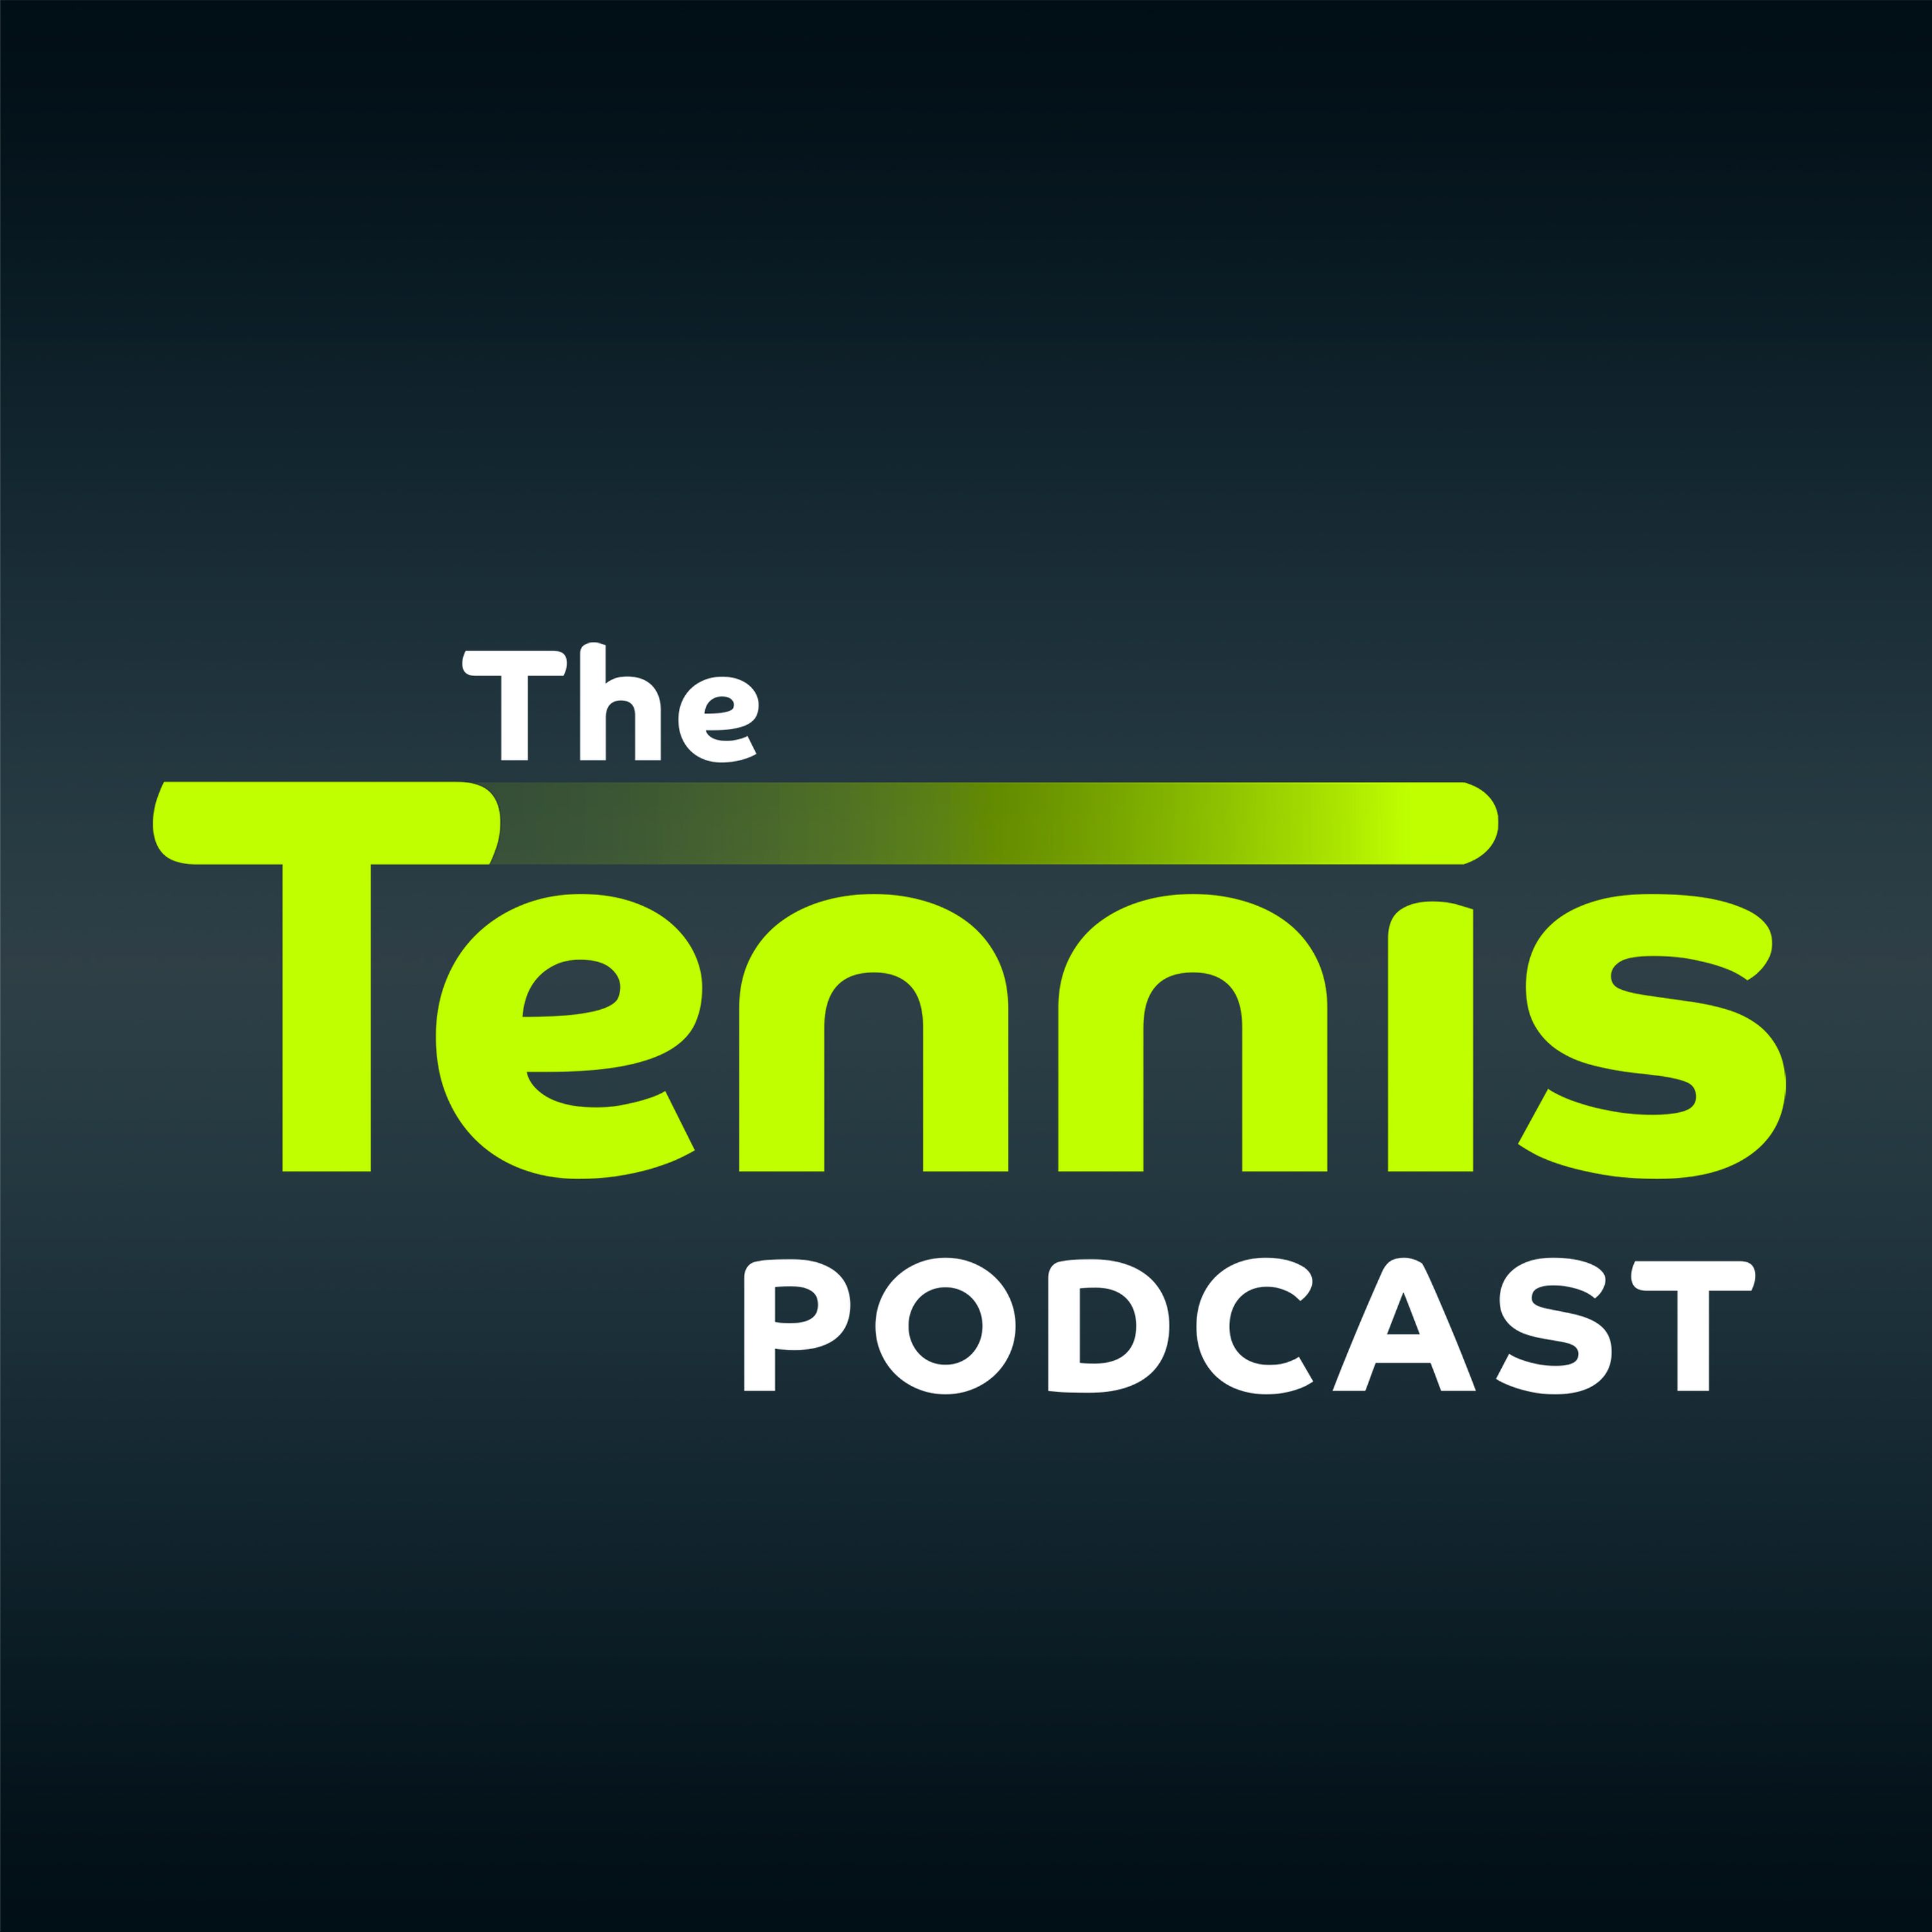 Roland Garros Re-Lived 1999: Graf vs. Hingis - Ecstasy, Agony, Aggro